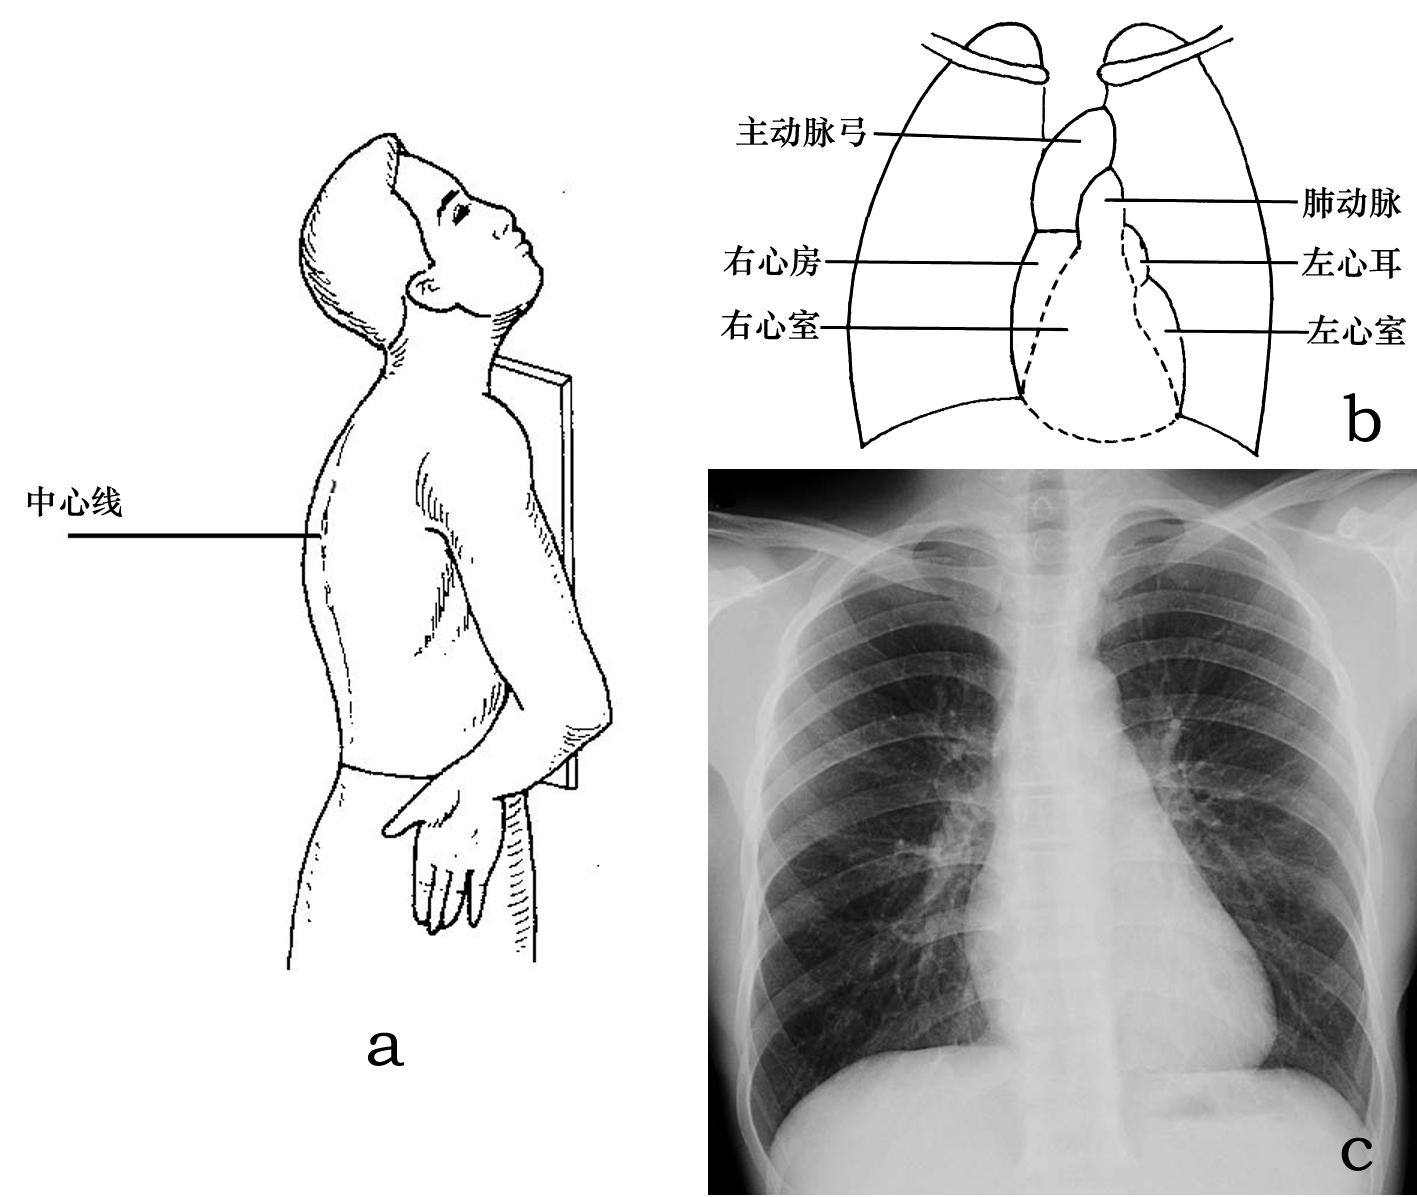 胸部x线摄影体位及临床意义 (转载)